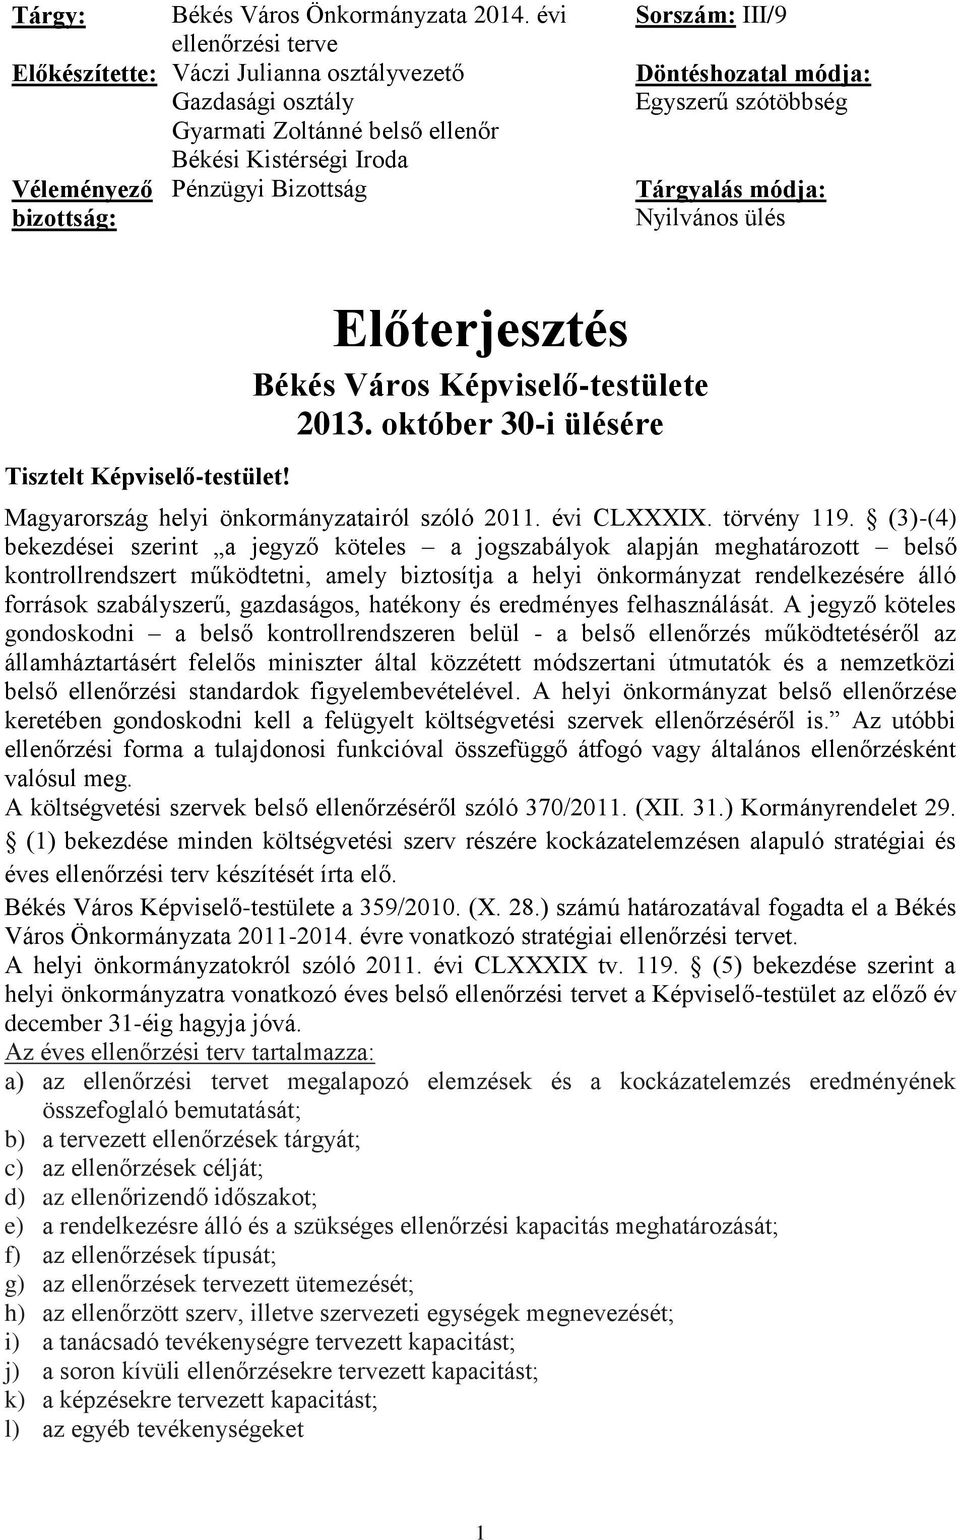 október 30-i ülésére Magyarország helyi önkormányzatairól szóló 2011. évi CLXXXIX. törvény 119.